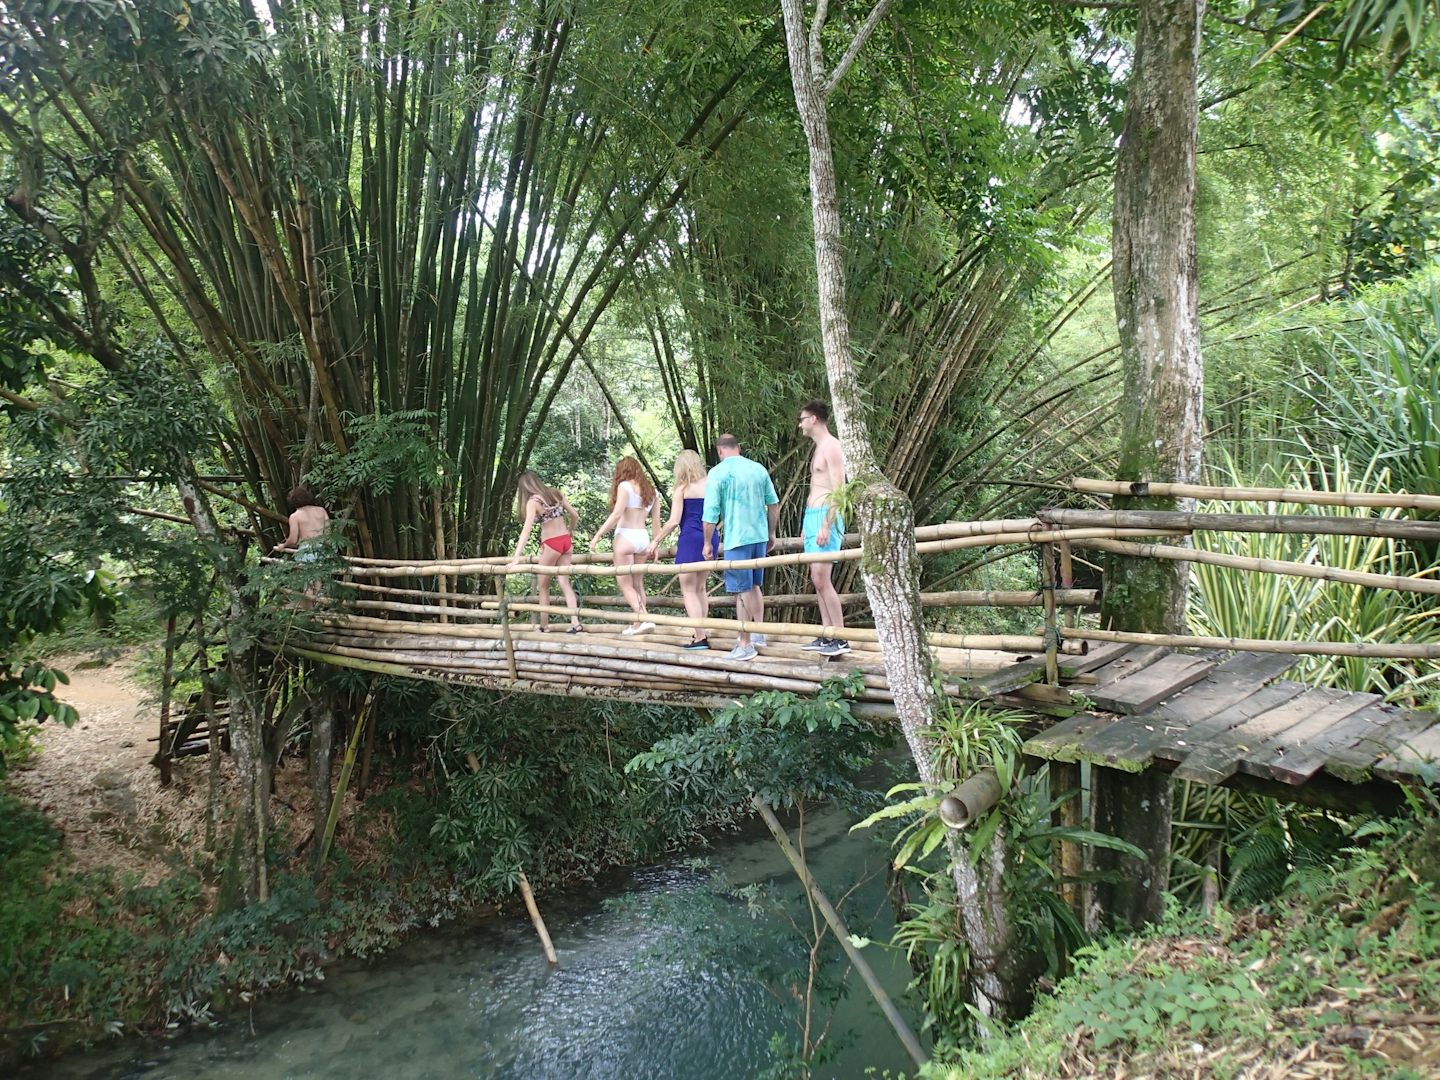 Headed to falls- cool bamboo bridge!